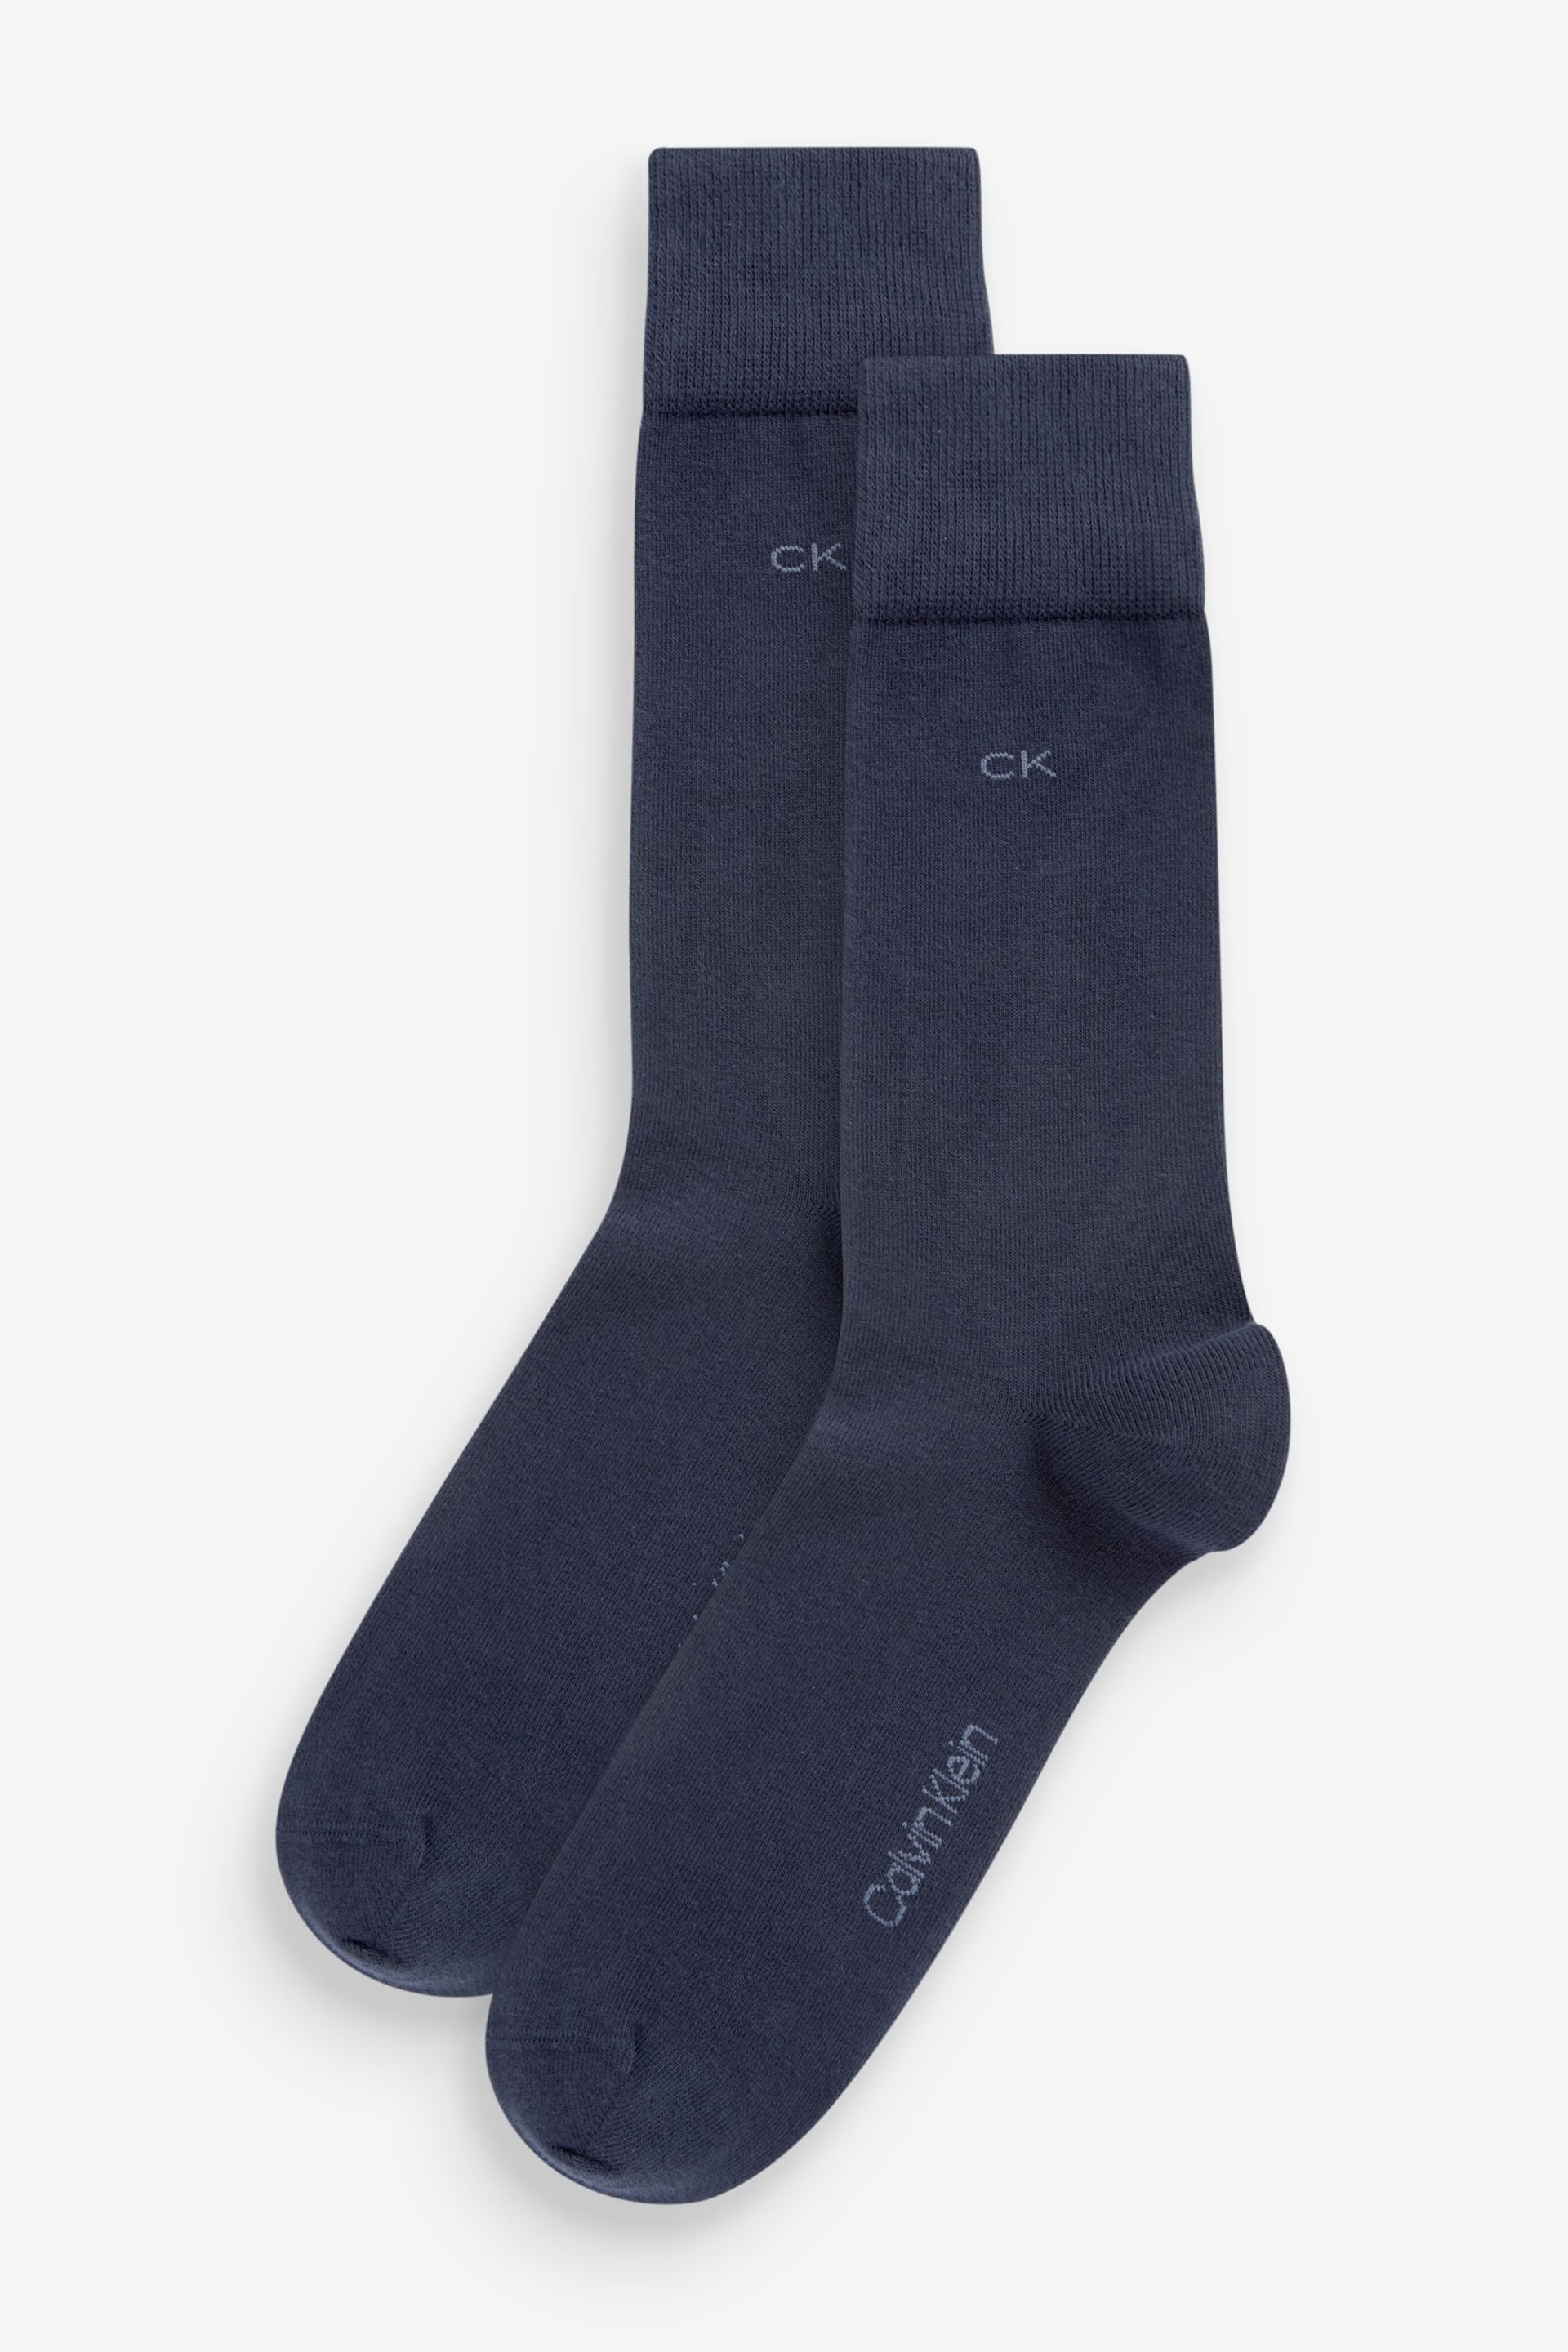 Calvin Klein Blue Mens Socks 2 Pack - Image 1 of 3